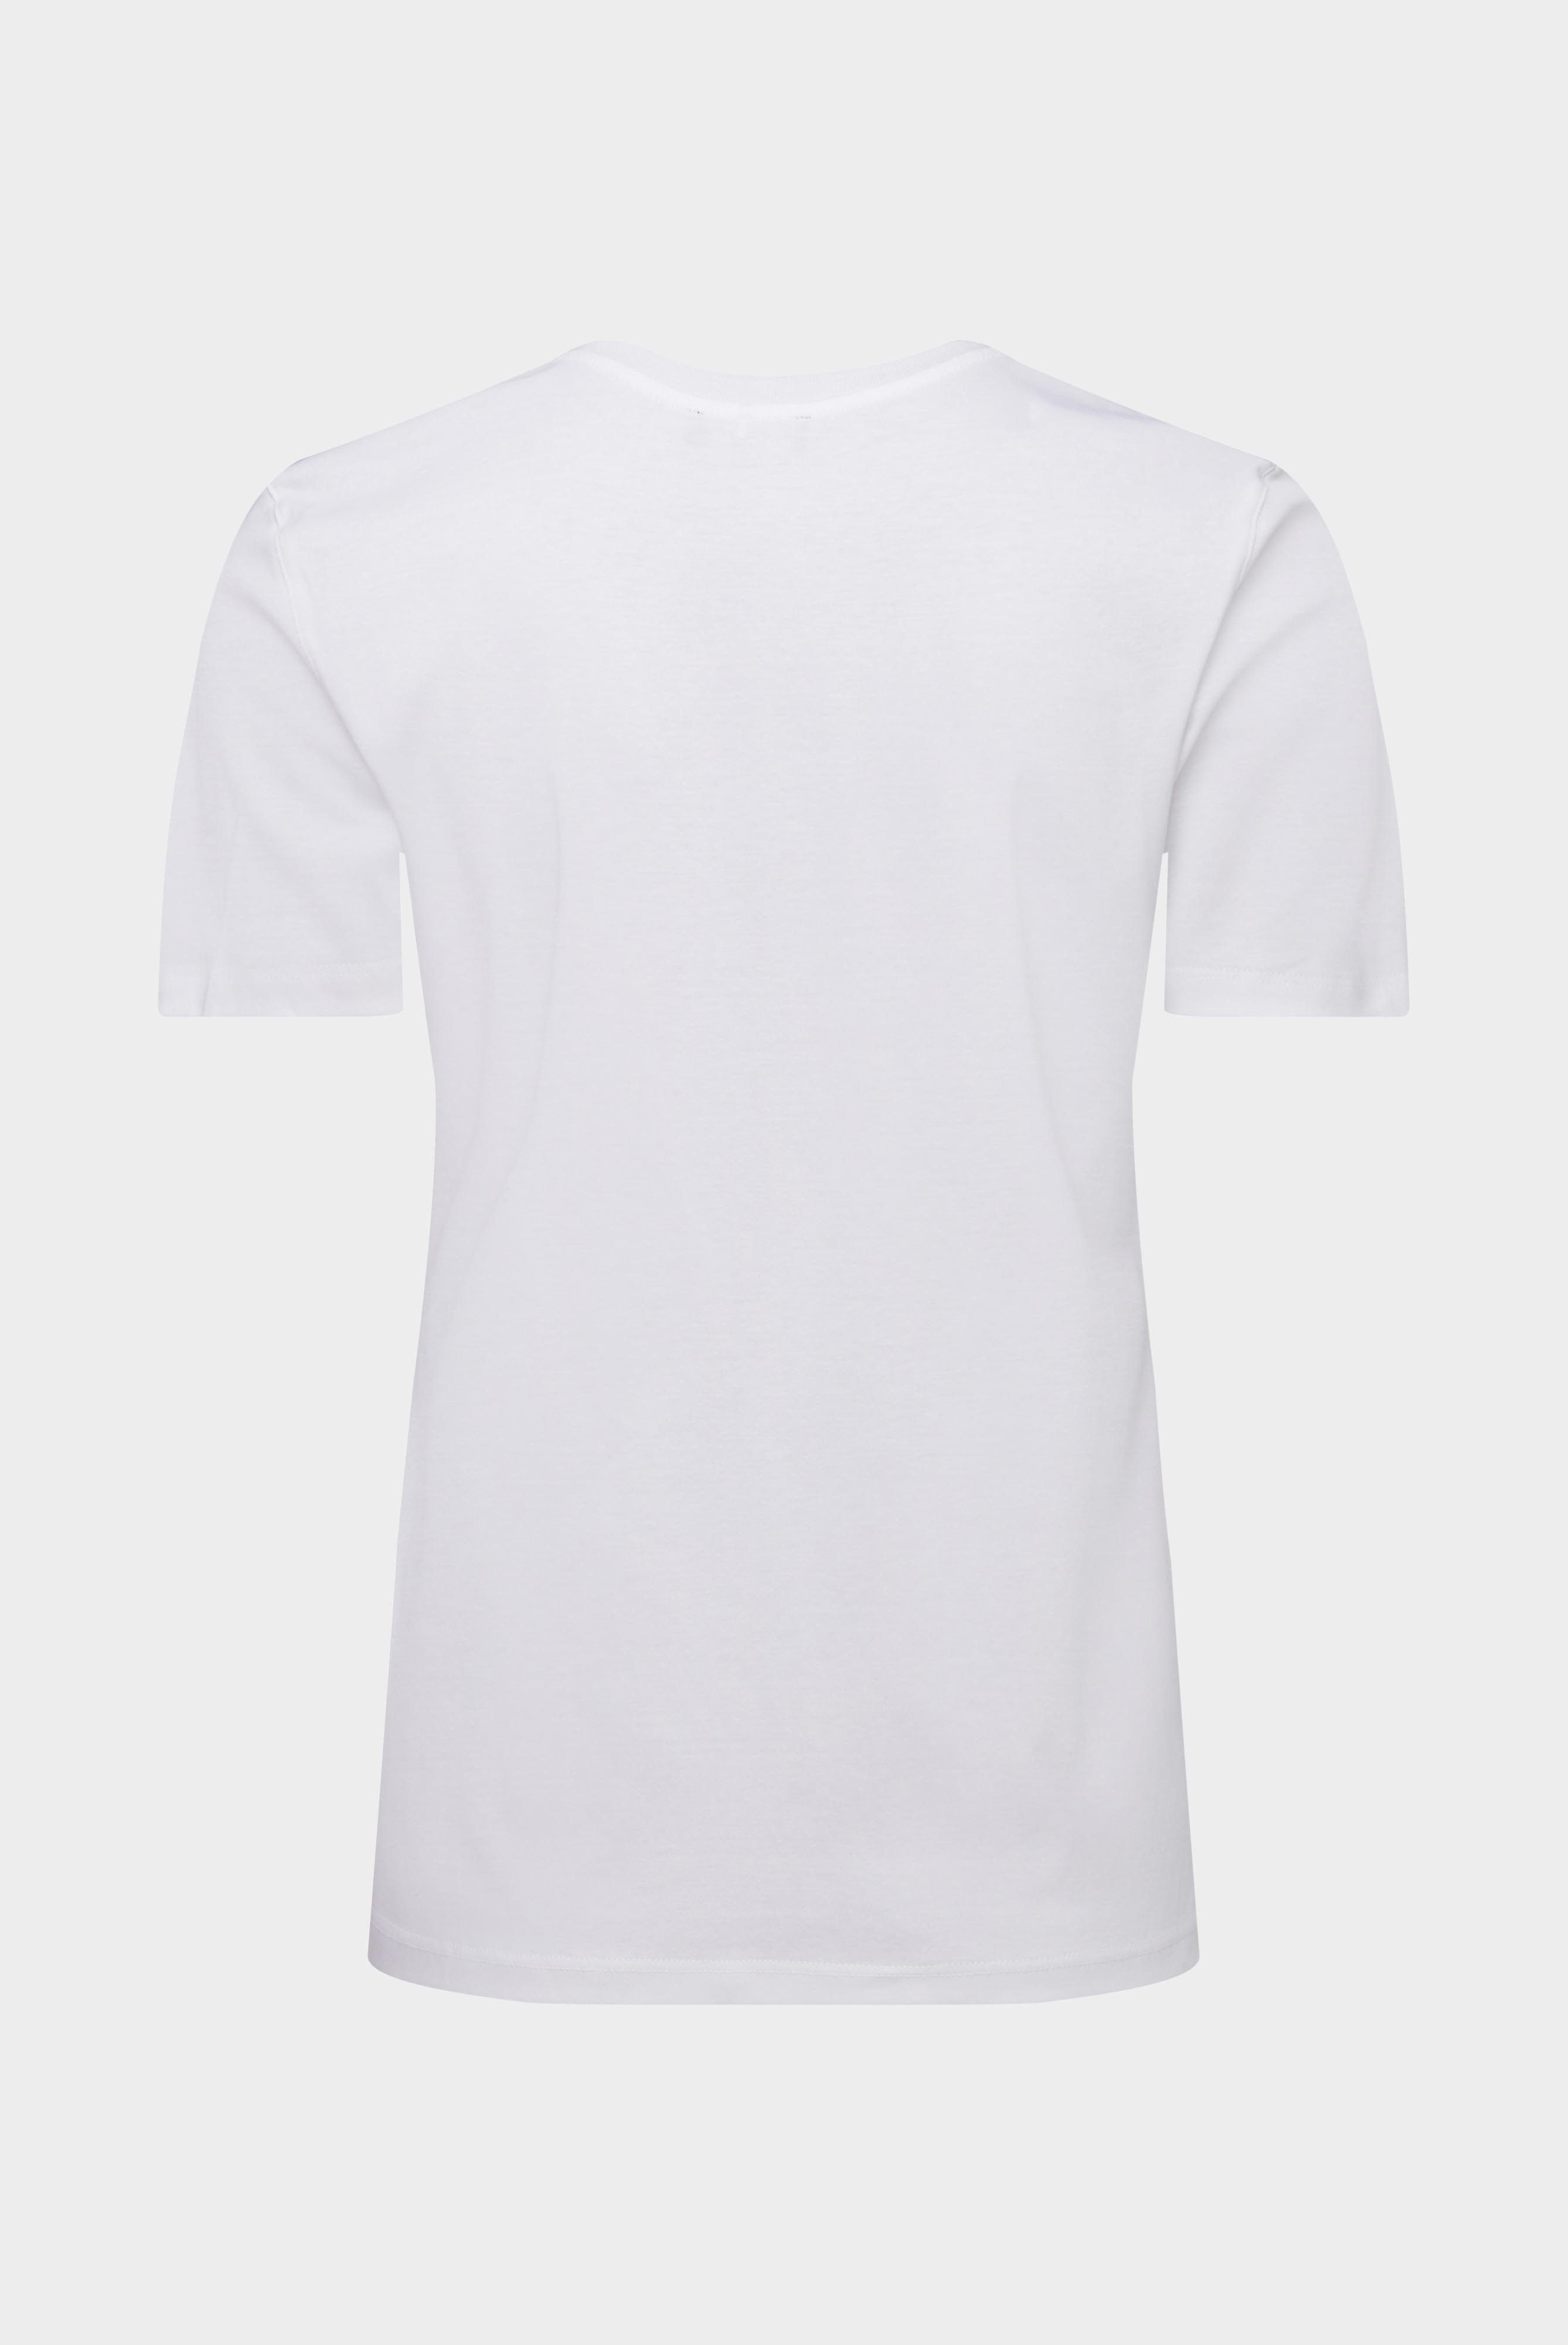 Tops & T-Shirts+Jersey T-Shirt+05.6384.18.180031.000.34